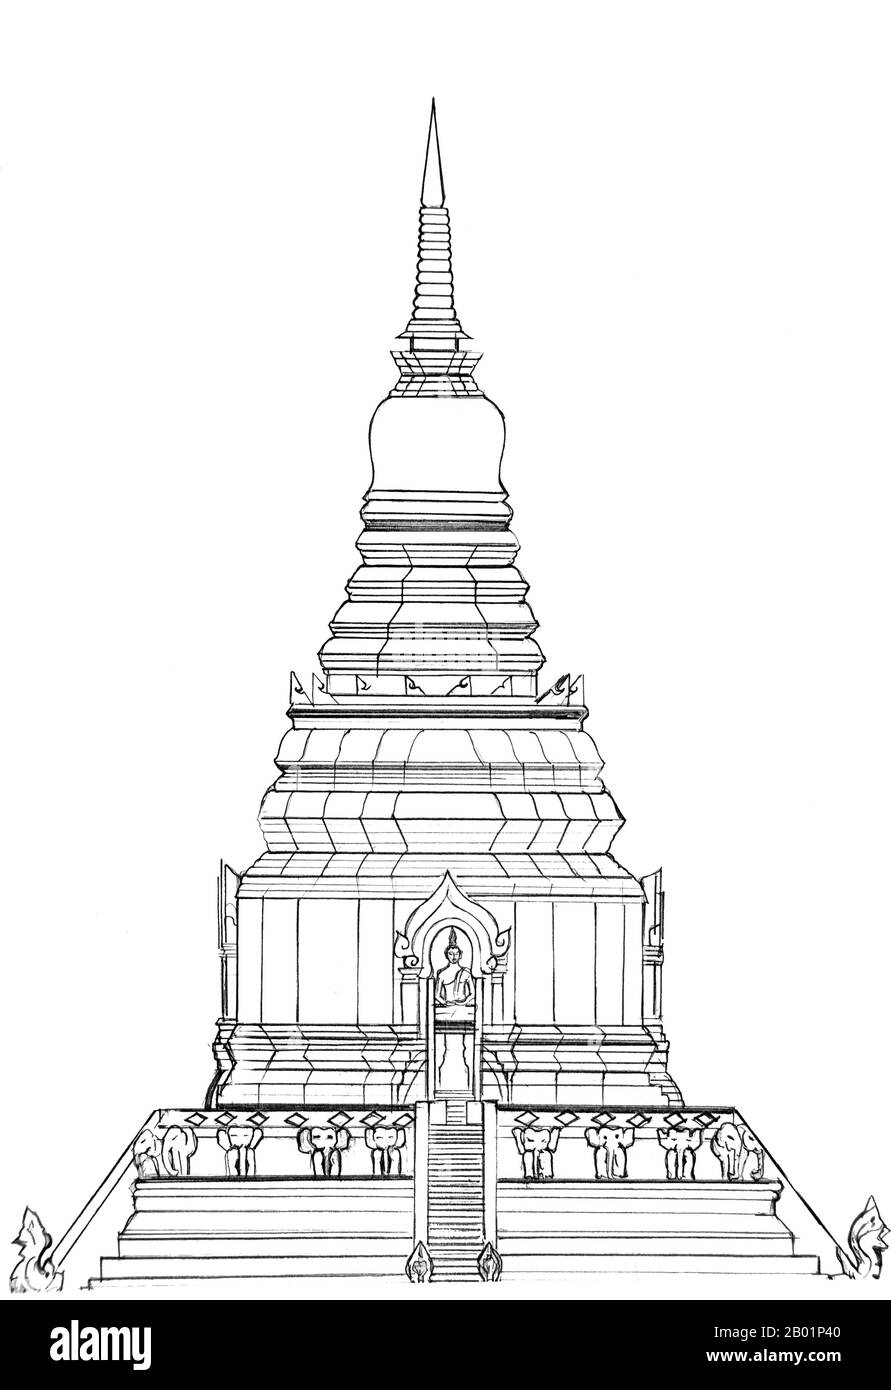 Thaïlande : dessin architectural de la forme originale présumée du Chedi Luang de Chiang Mai avant le tremblement de terre de 1545. Vue du côté est, vue de l'entrée principale. Wat Chedi Luang se traduit littéralement du thaï par « Monastère du Grand Stupa ». La construction du temple a commencé à la fin du 14e siècle, lorsque le Royaume de LAN Na était dans son apogée. Le roi Saen Muang Ma (1385-1401) l'a conçu comme le site d'un grand reliquaire pour enchâsser les cendres de son père, le roi Ku Na (1355-1385). Aujourd'hui, c'est le site du Lak Muang ou pilier de la ville. Banque D'Images